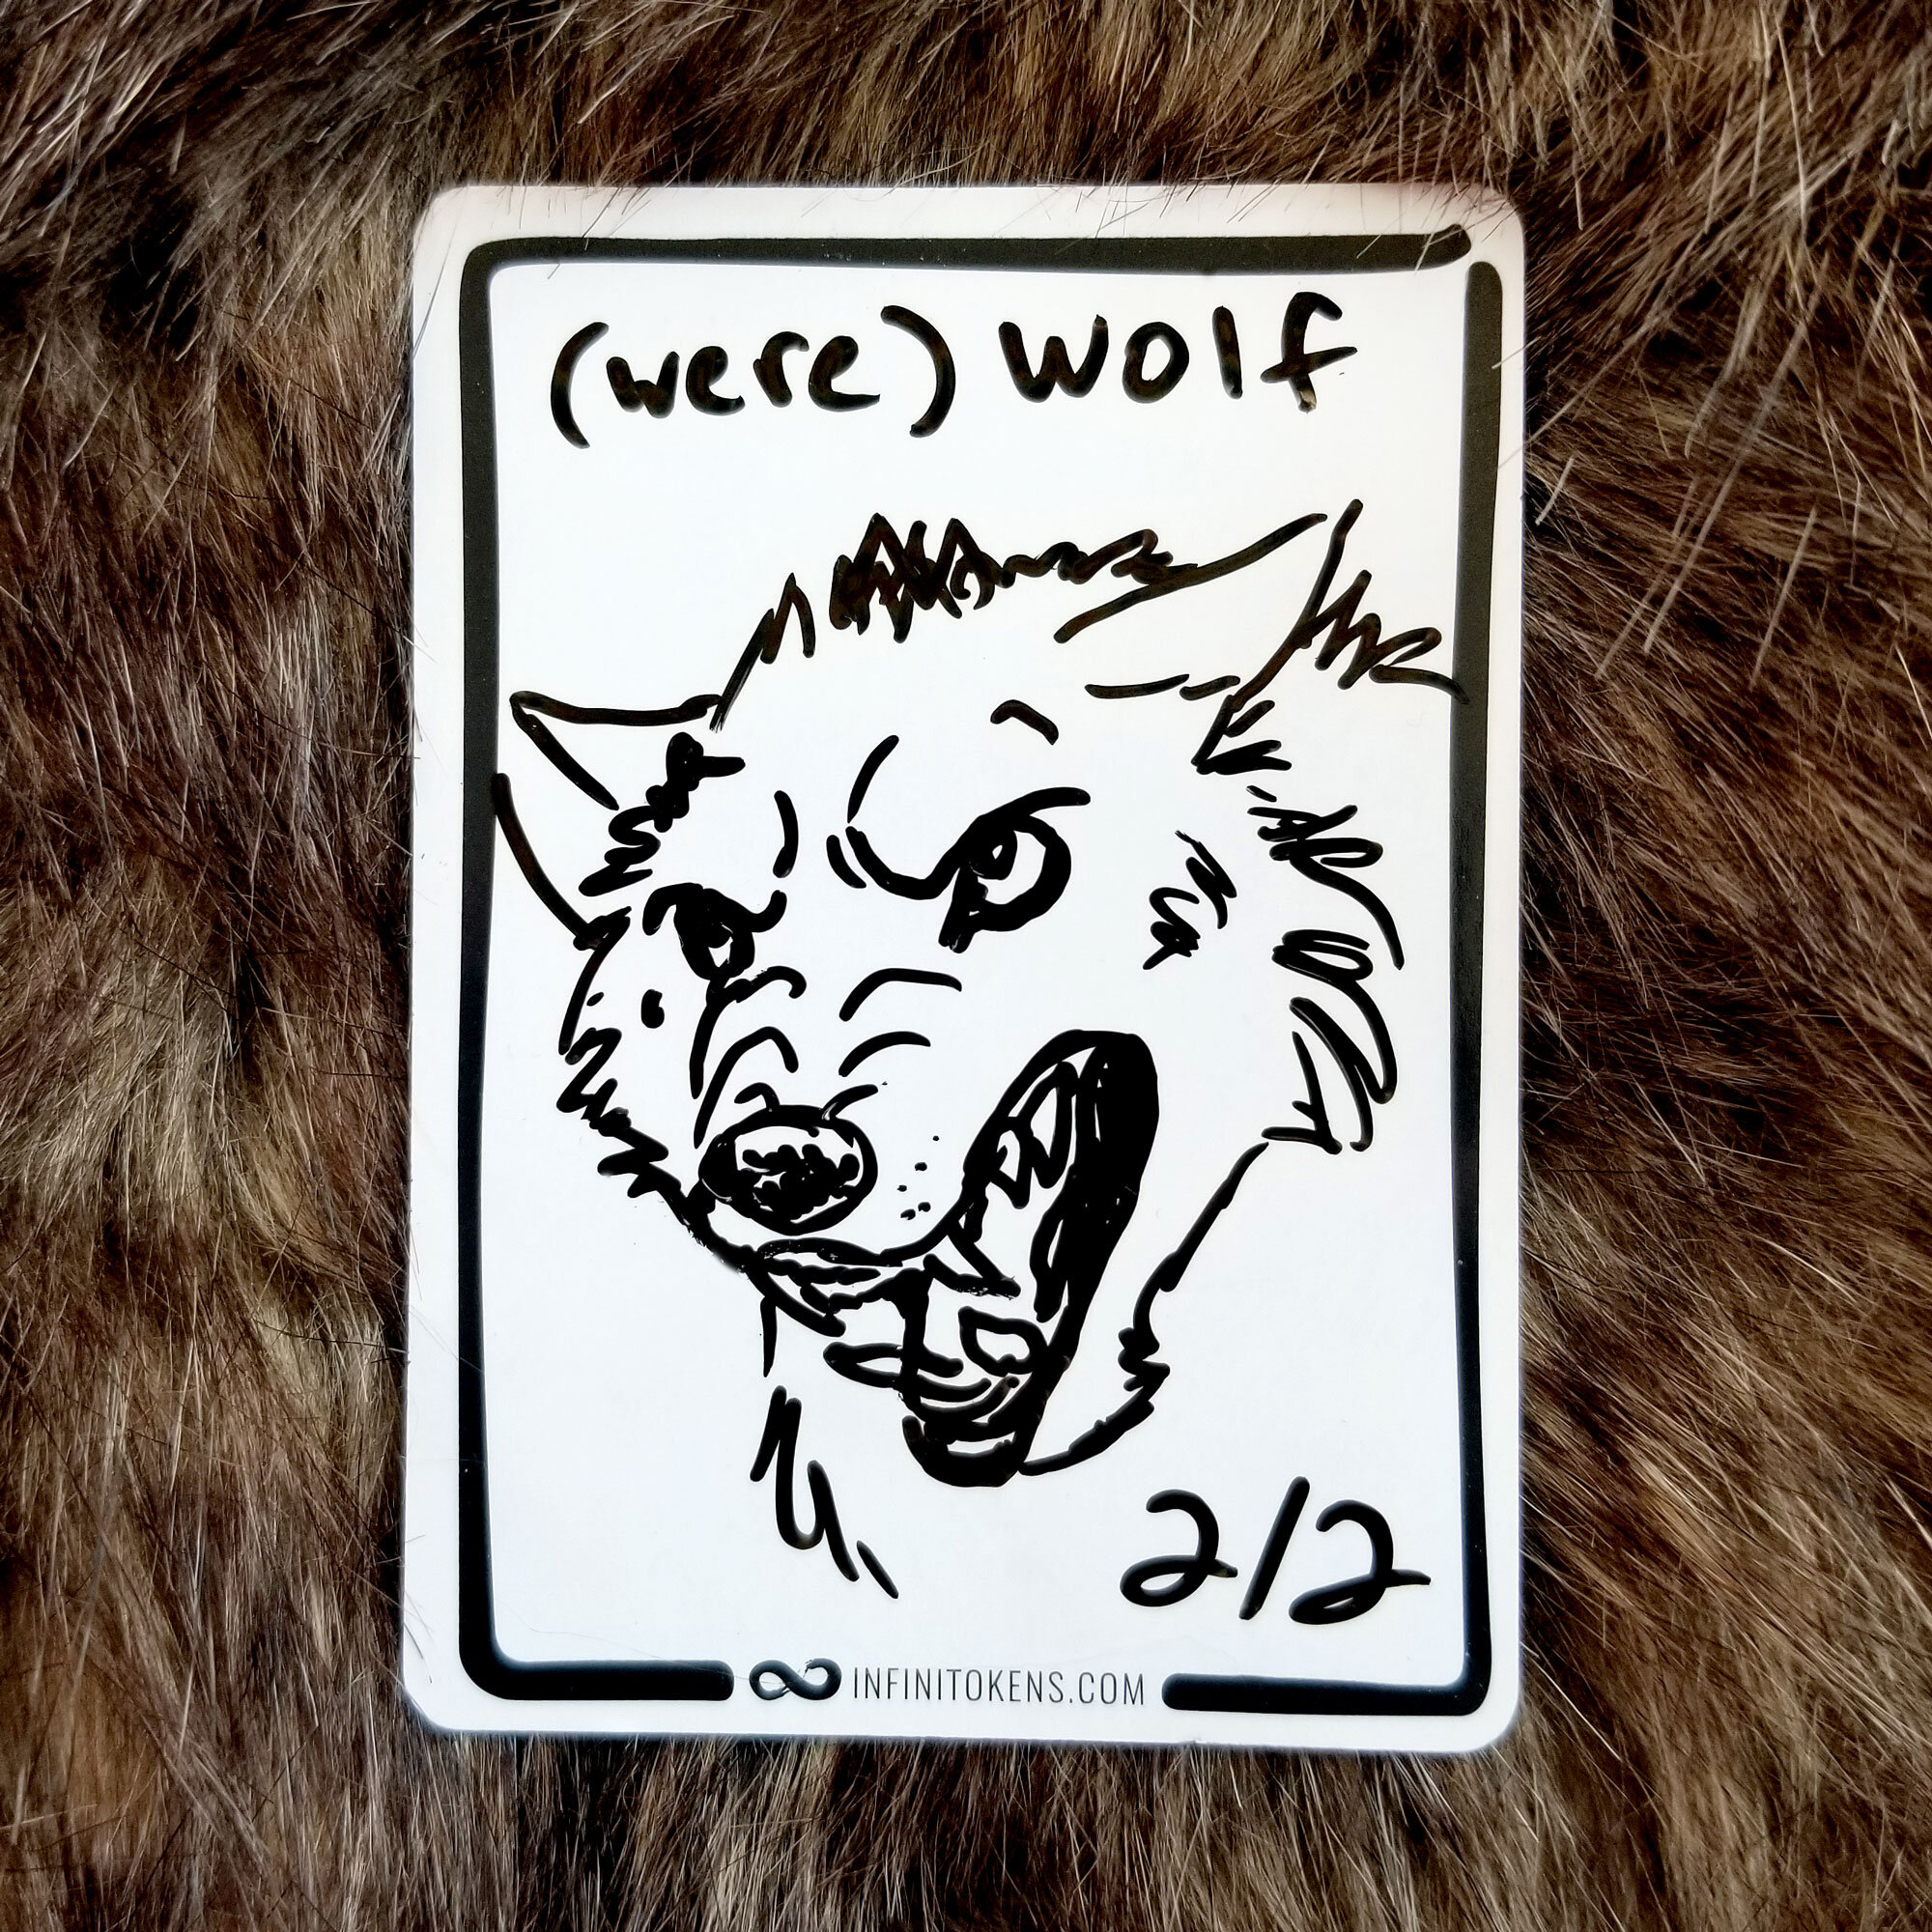 Day 16 - (Were)Wolf